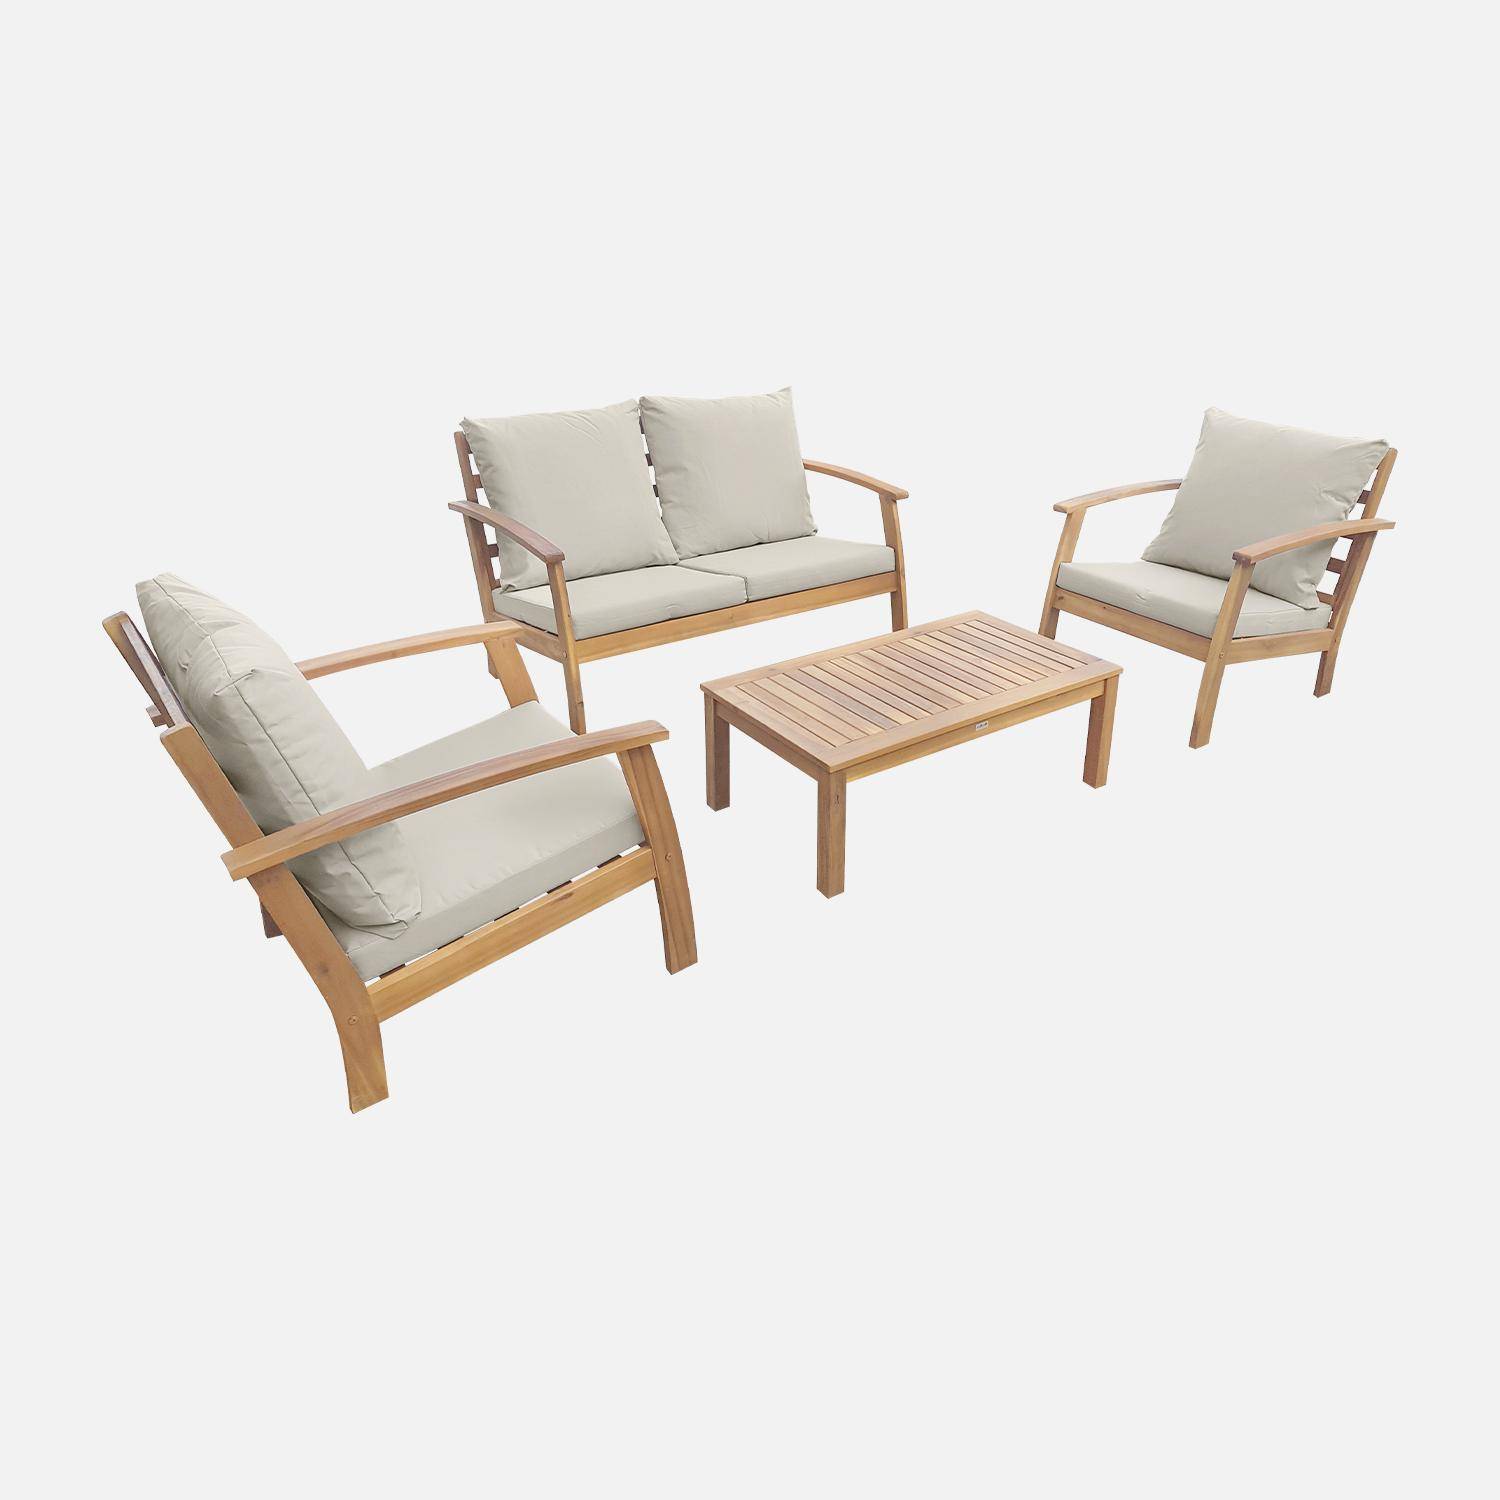 Salon de jardin en bois 4 places - Ushuaïa - Coussins écrus, canapé, fauteuils et table basse en acacia, design Photo4